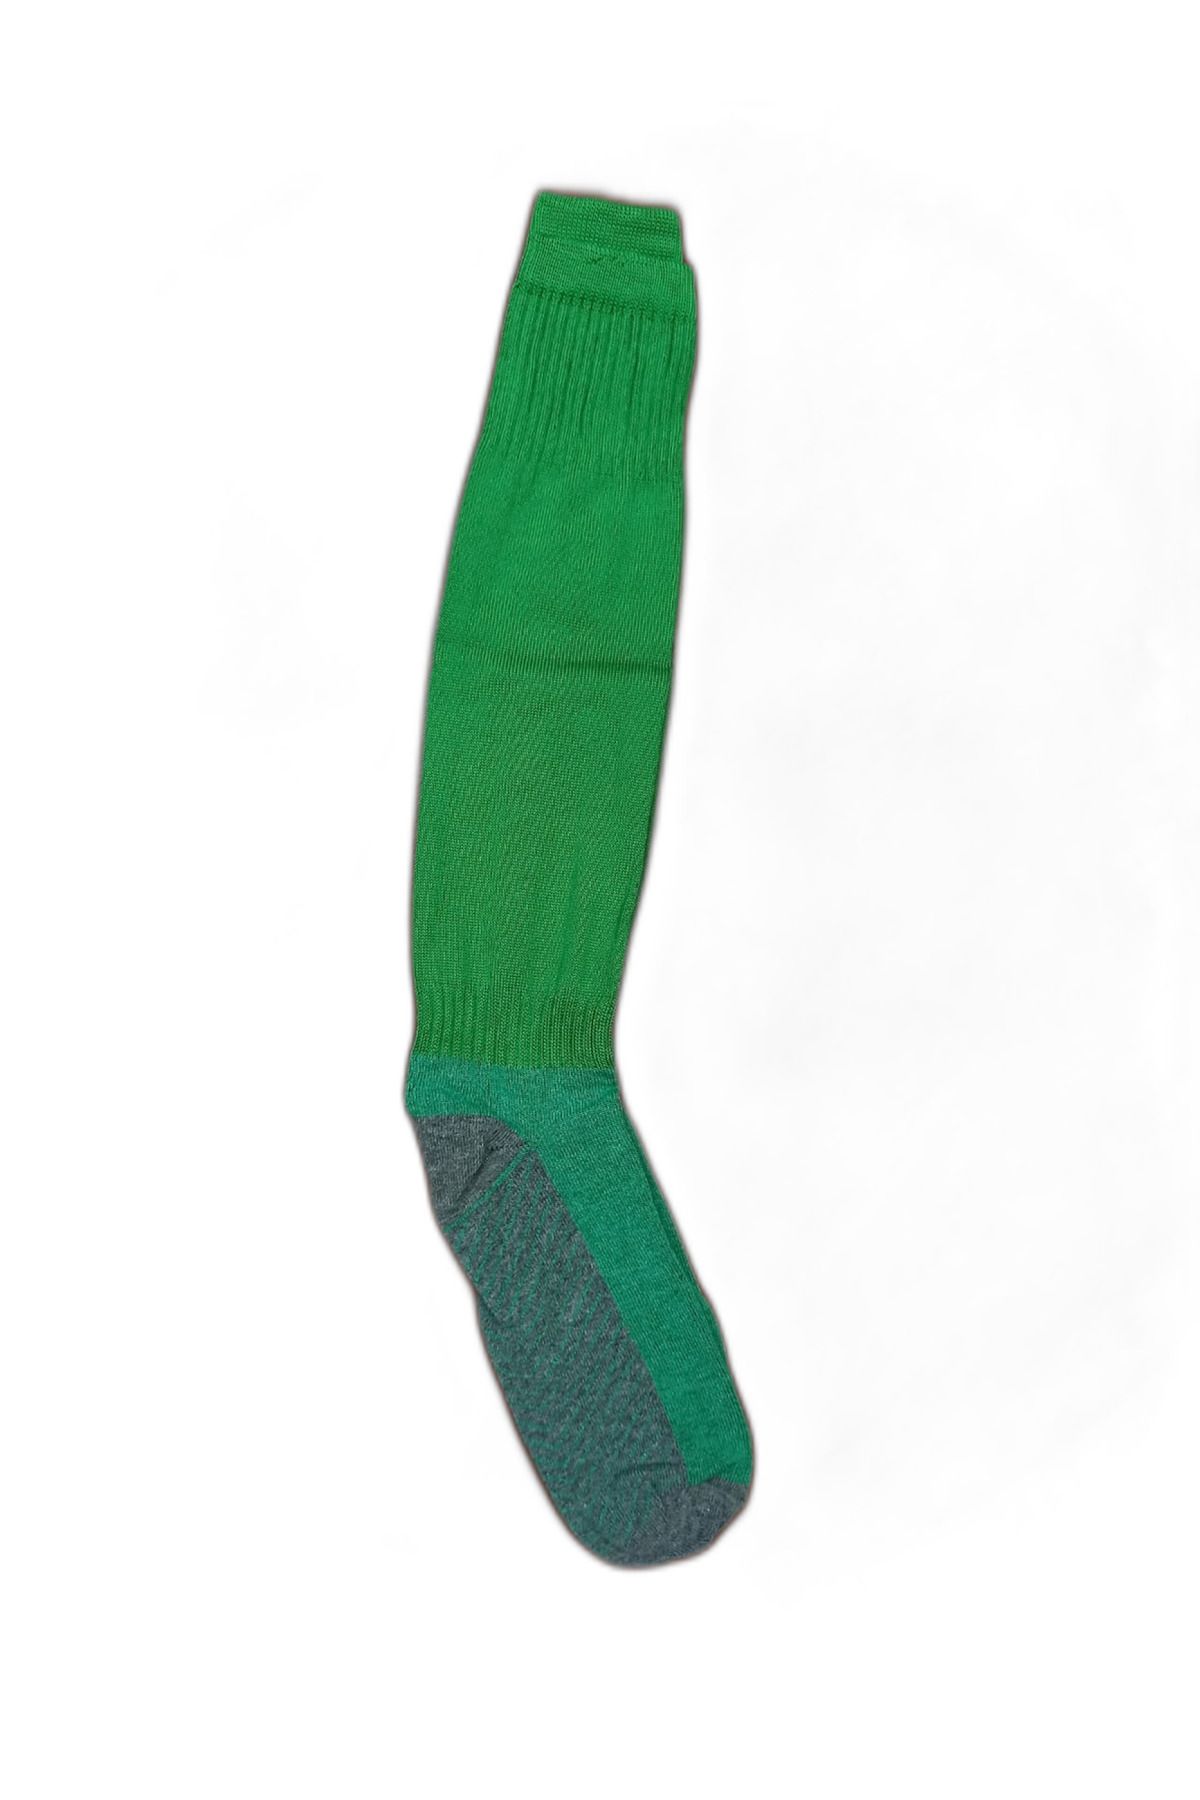 K18 Garson Boy Çocuk Futbol Tozluğu Çorap Yeşil (36-39)